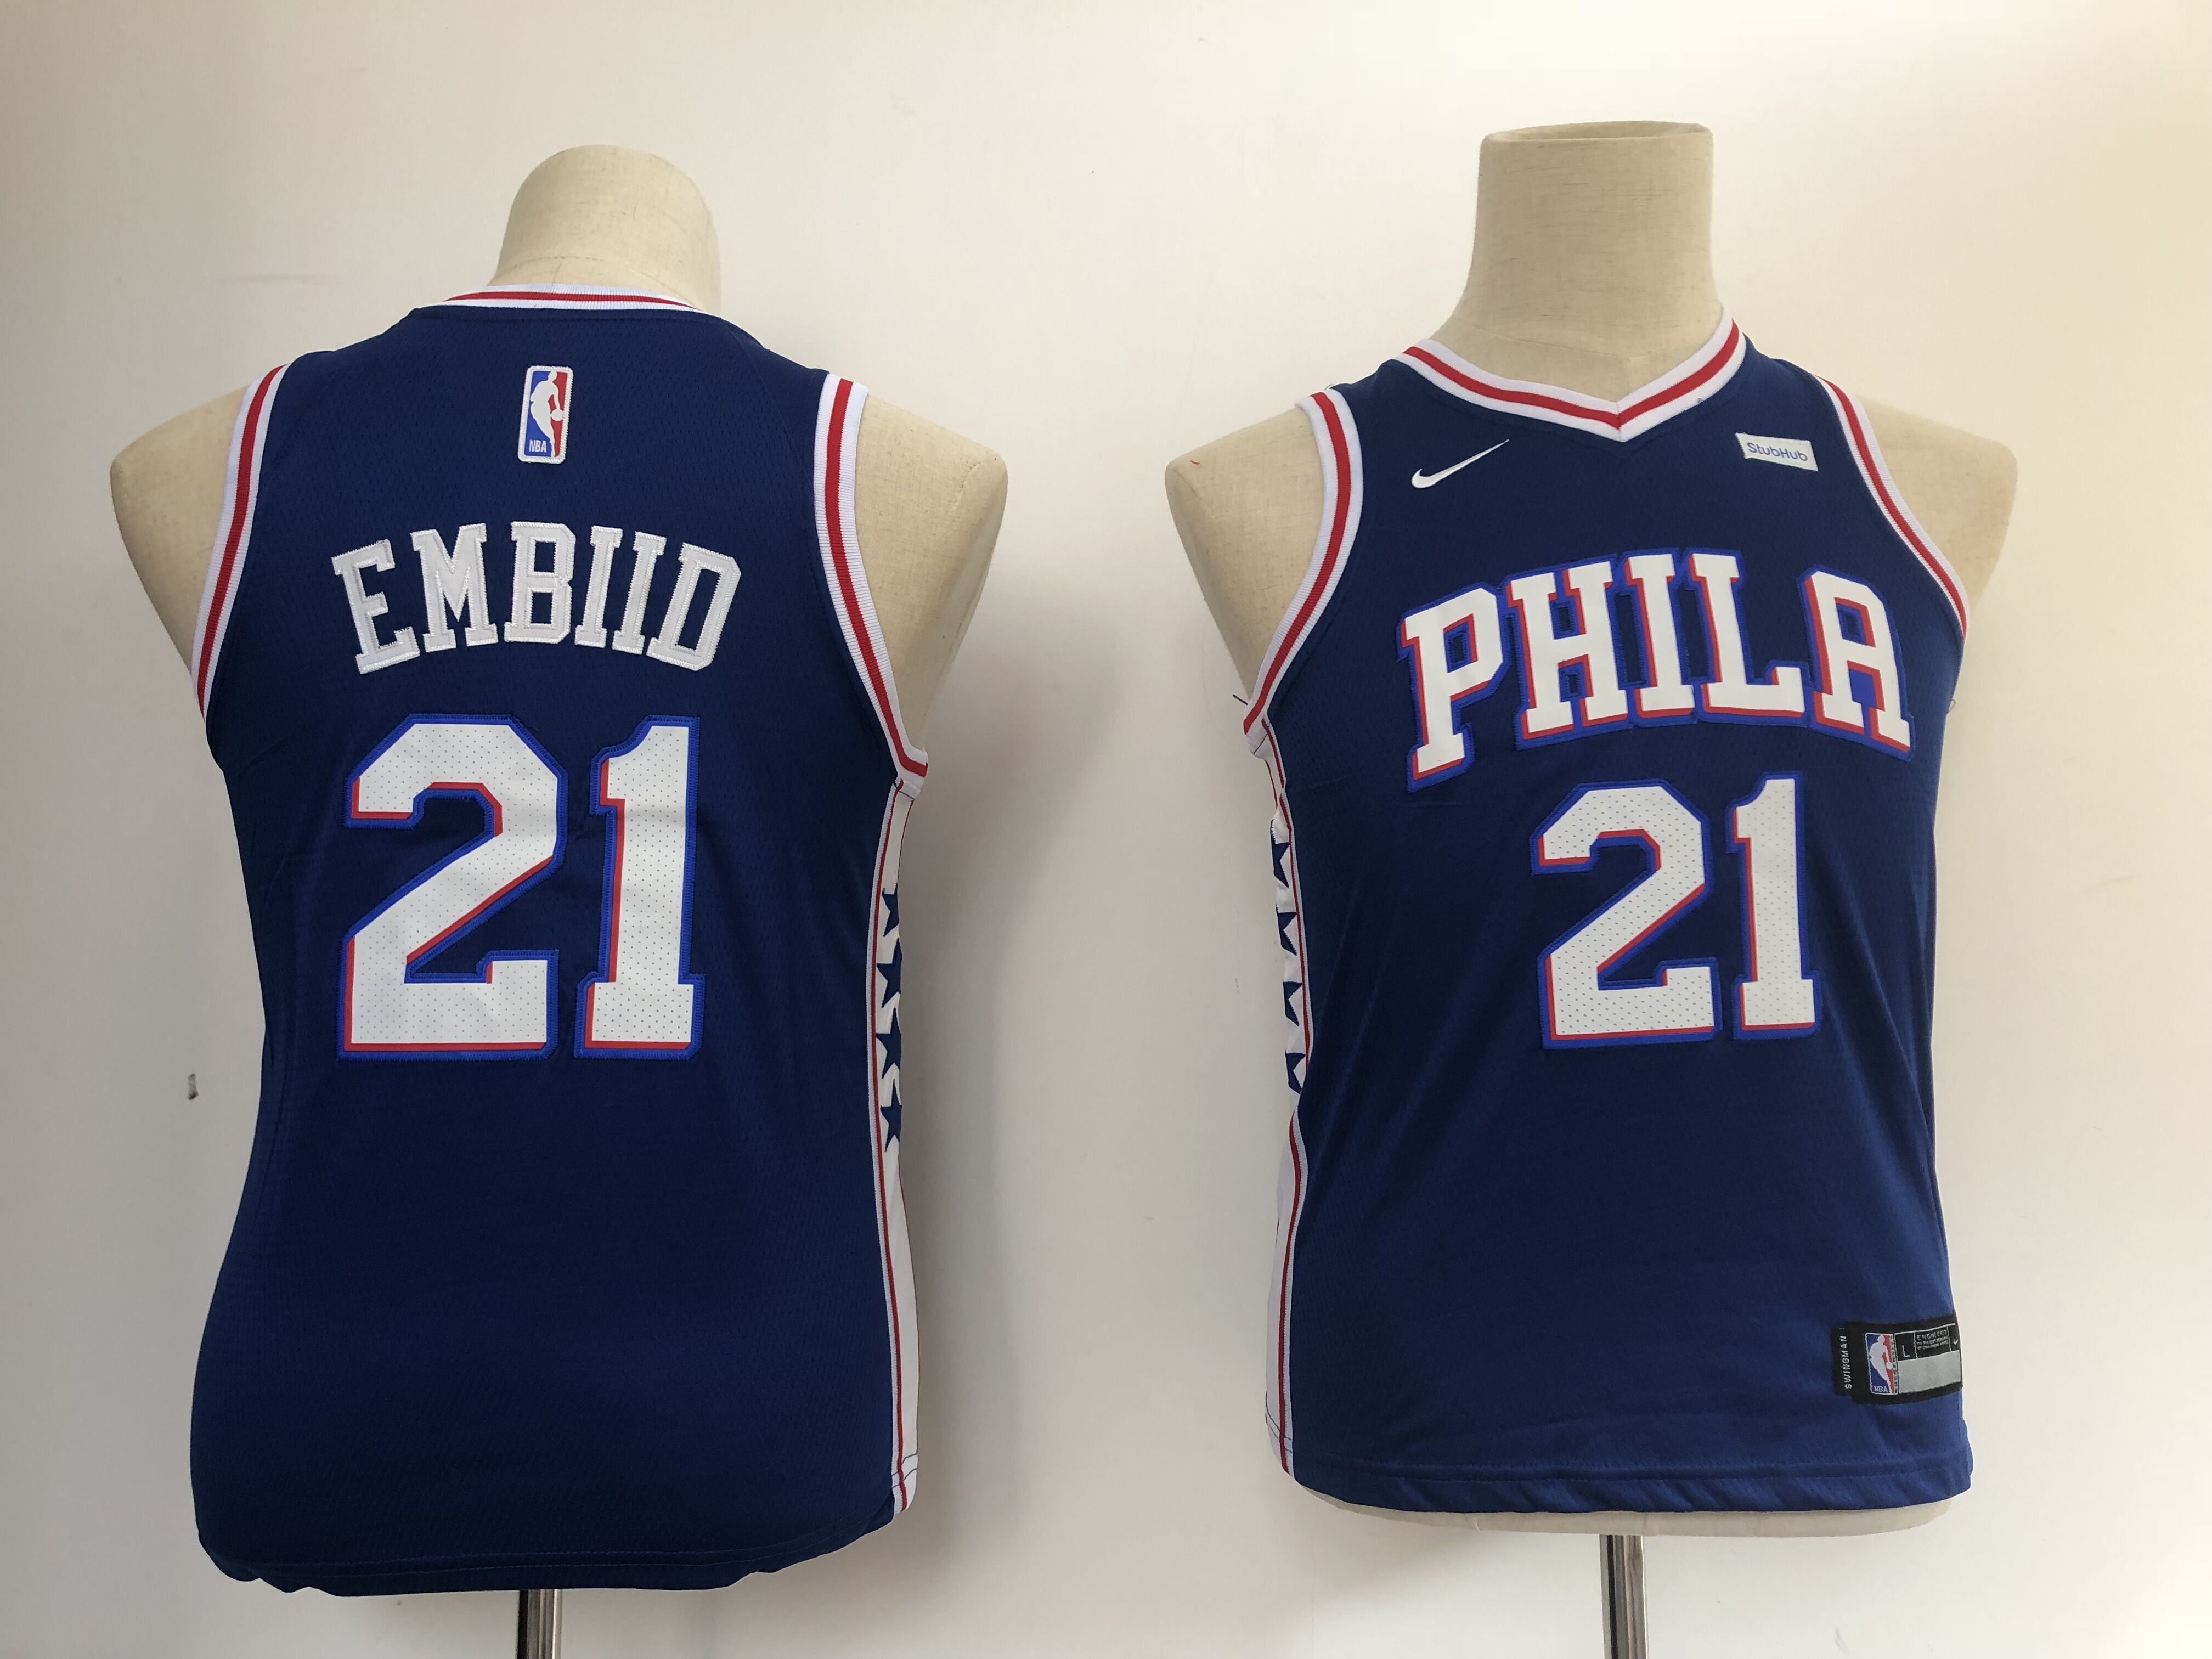 Youth Philadelphia 76ers #21 Embiid blue Nike NBA Jerseys